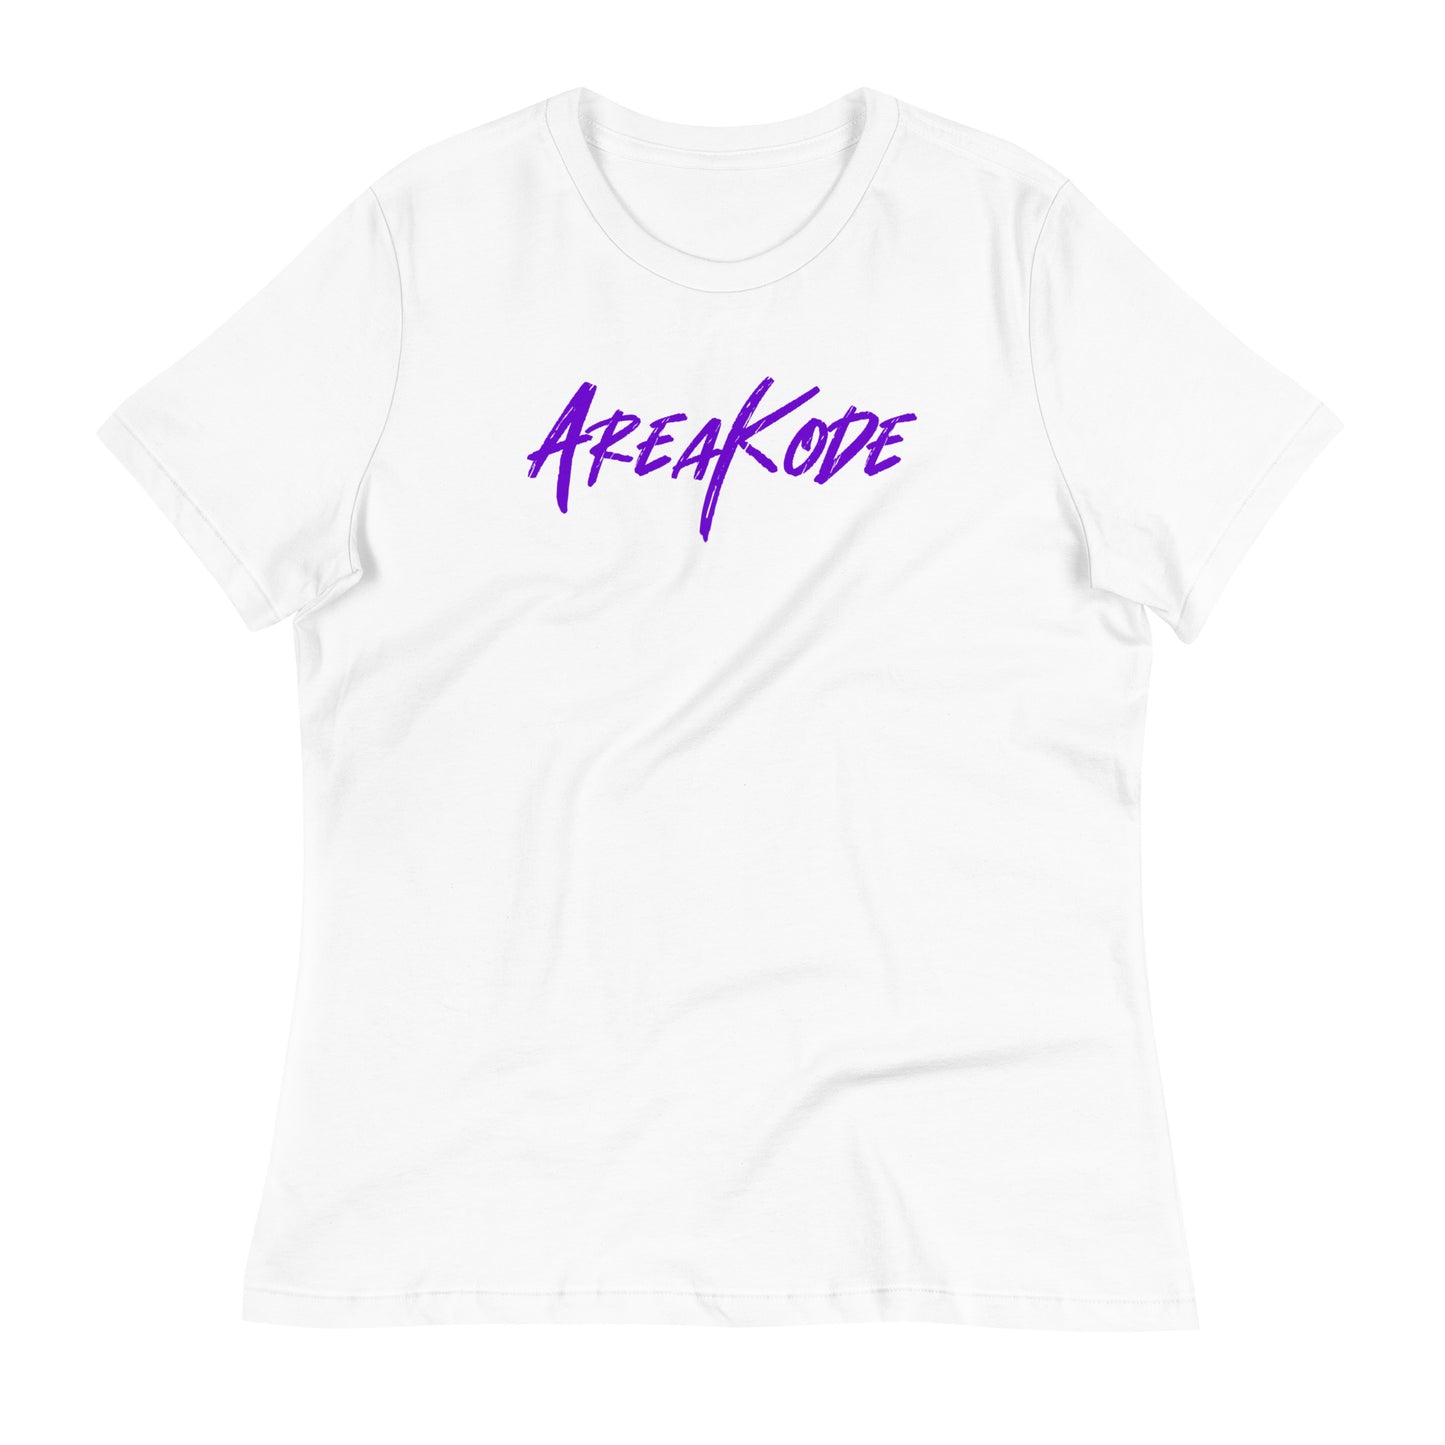 W| AreaKode (purple)